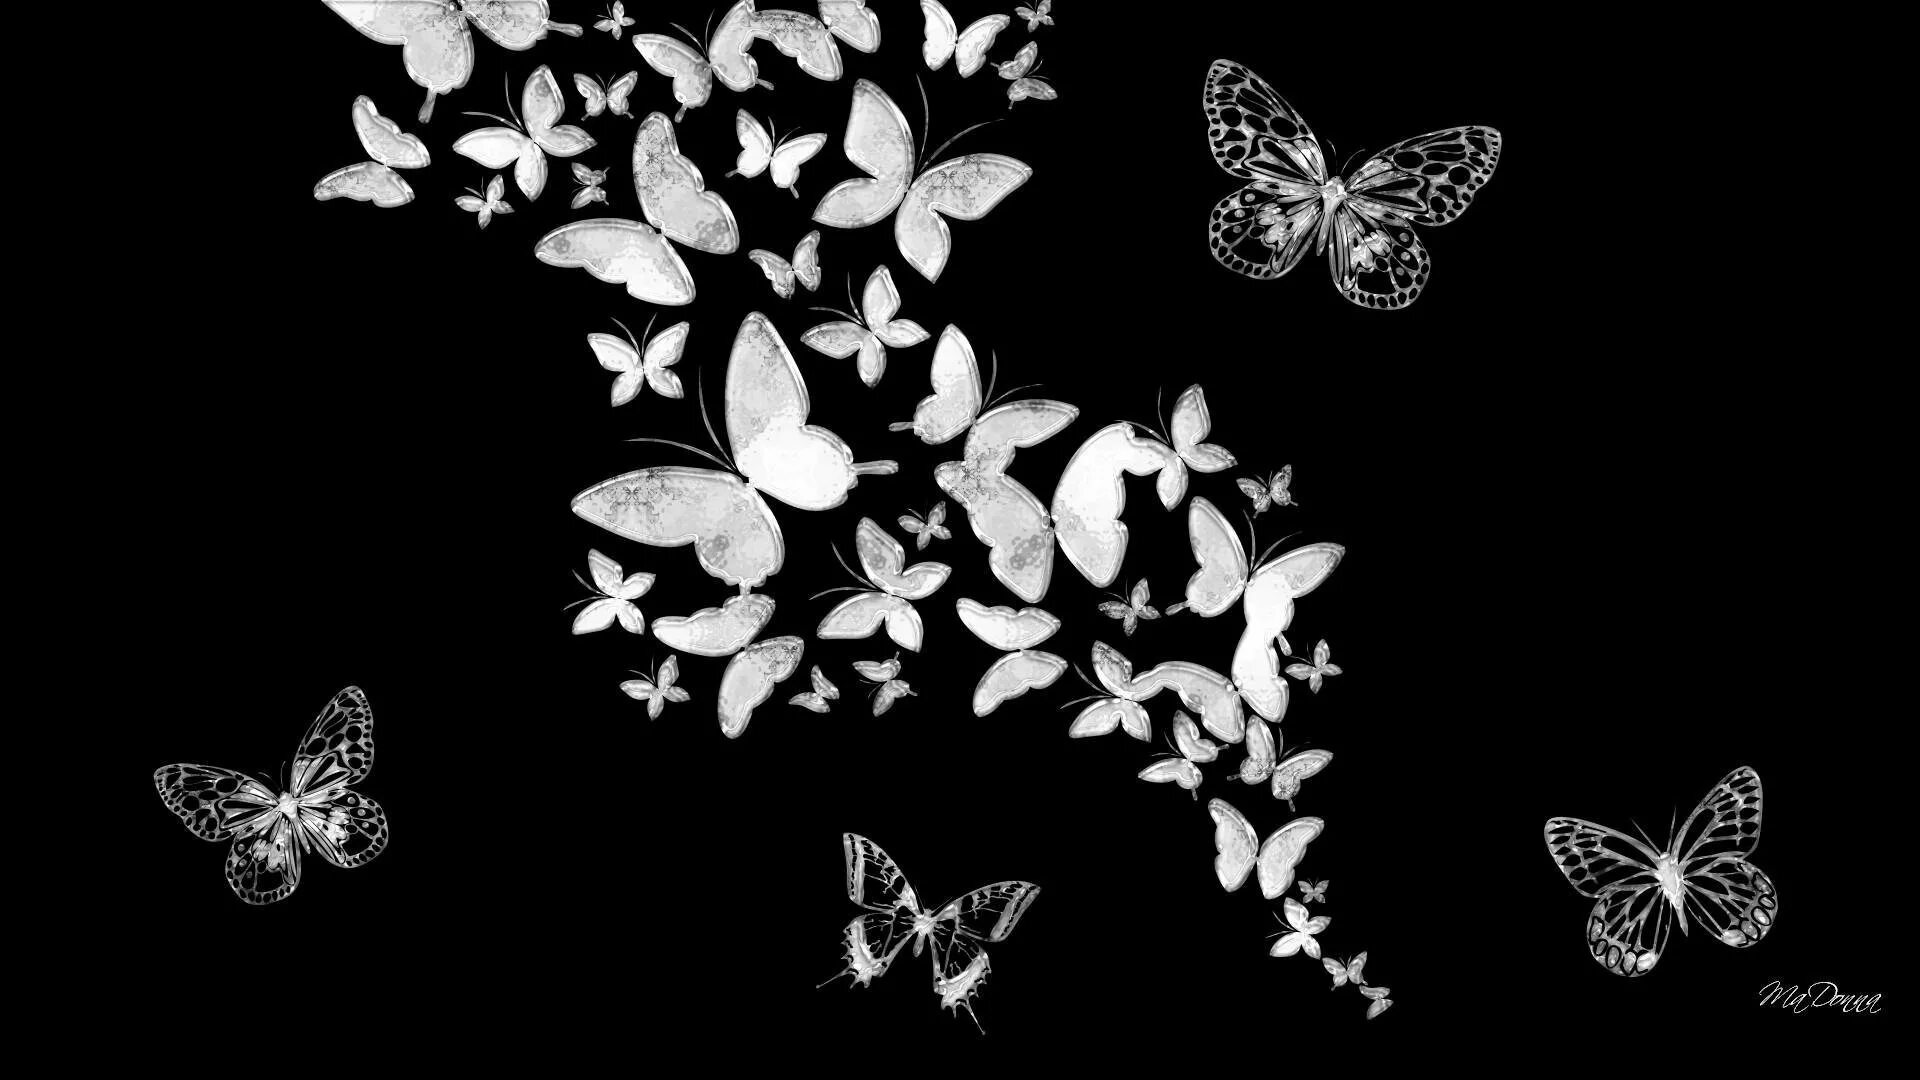 Изображения на черном фоне. Бабочки на черном фоне. Бабочка черно белая. Бабочка на темном фоне. Черные бабочки на белом фоне.